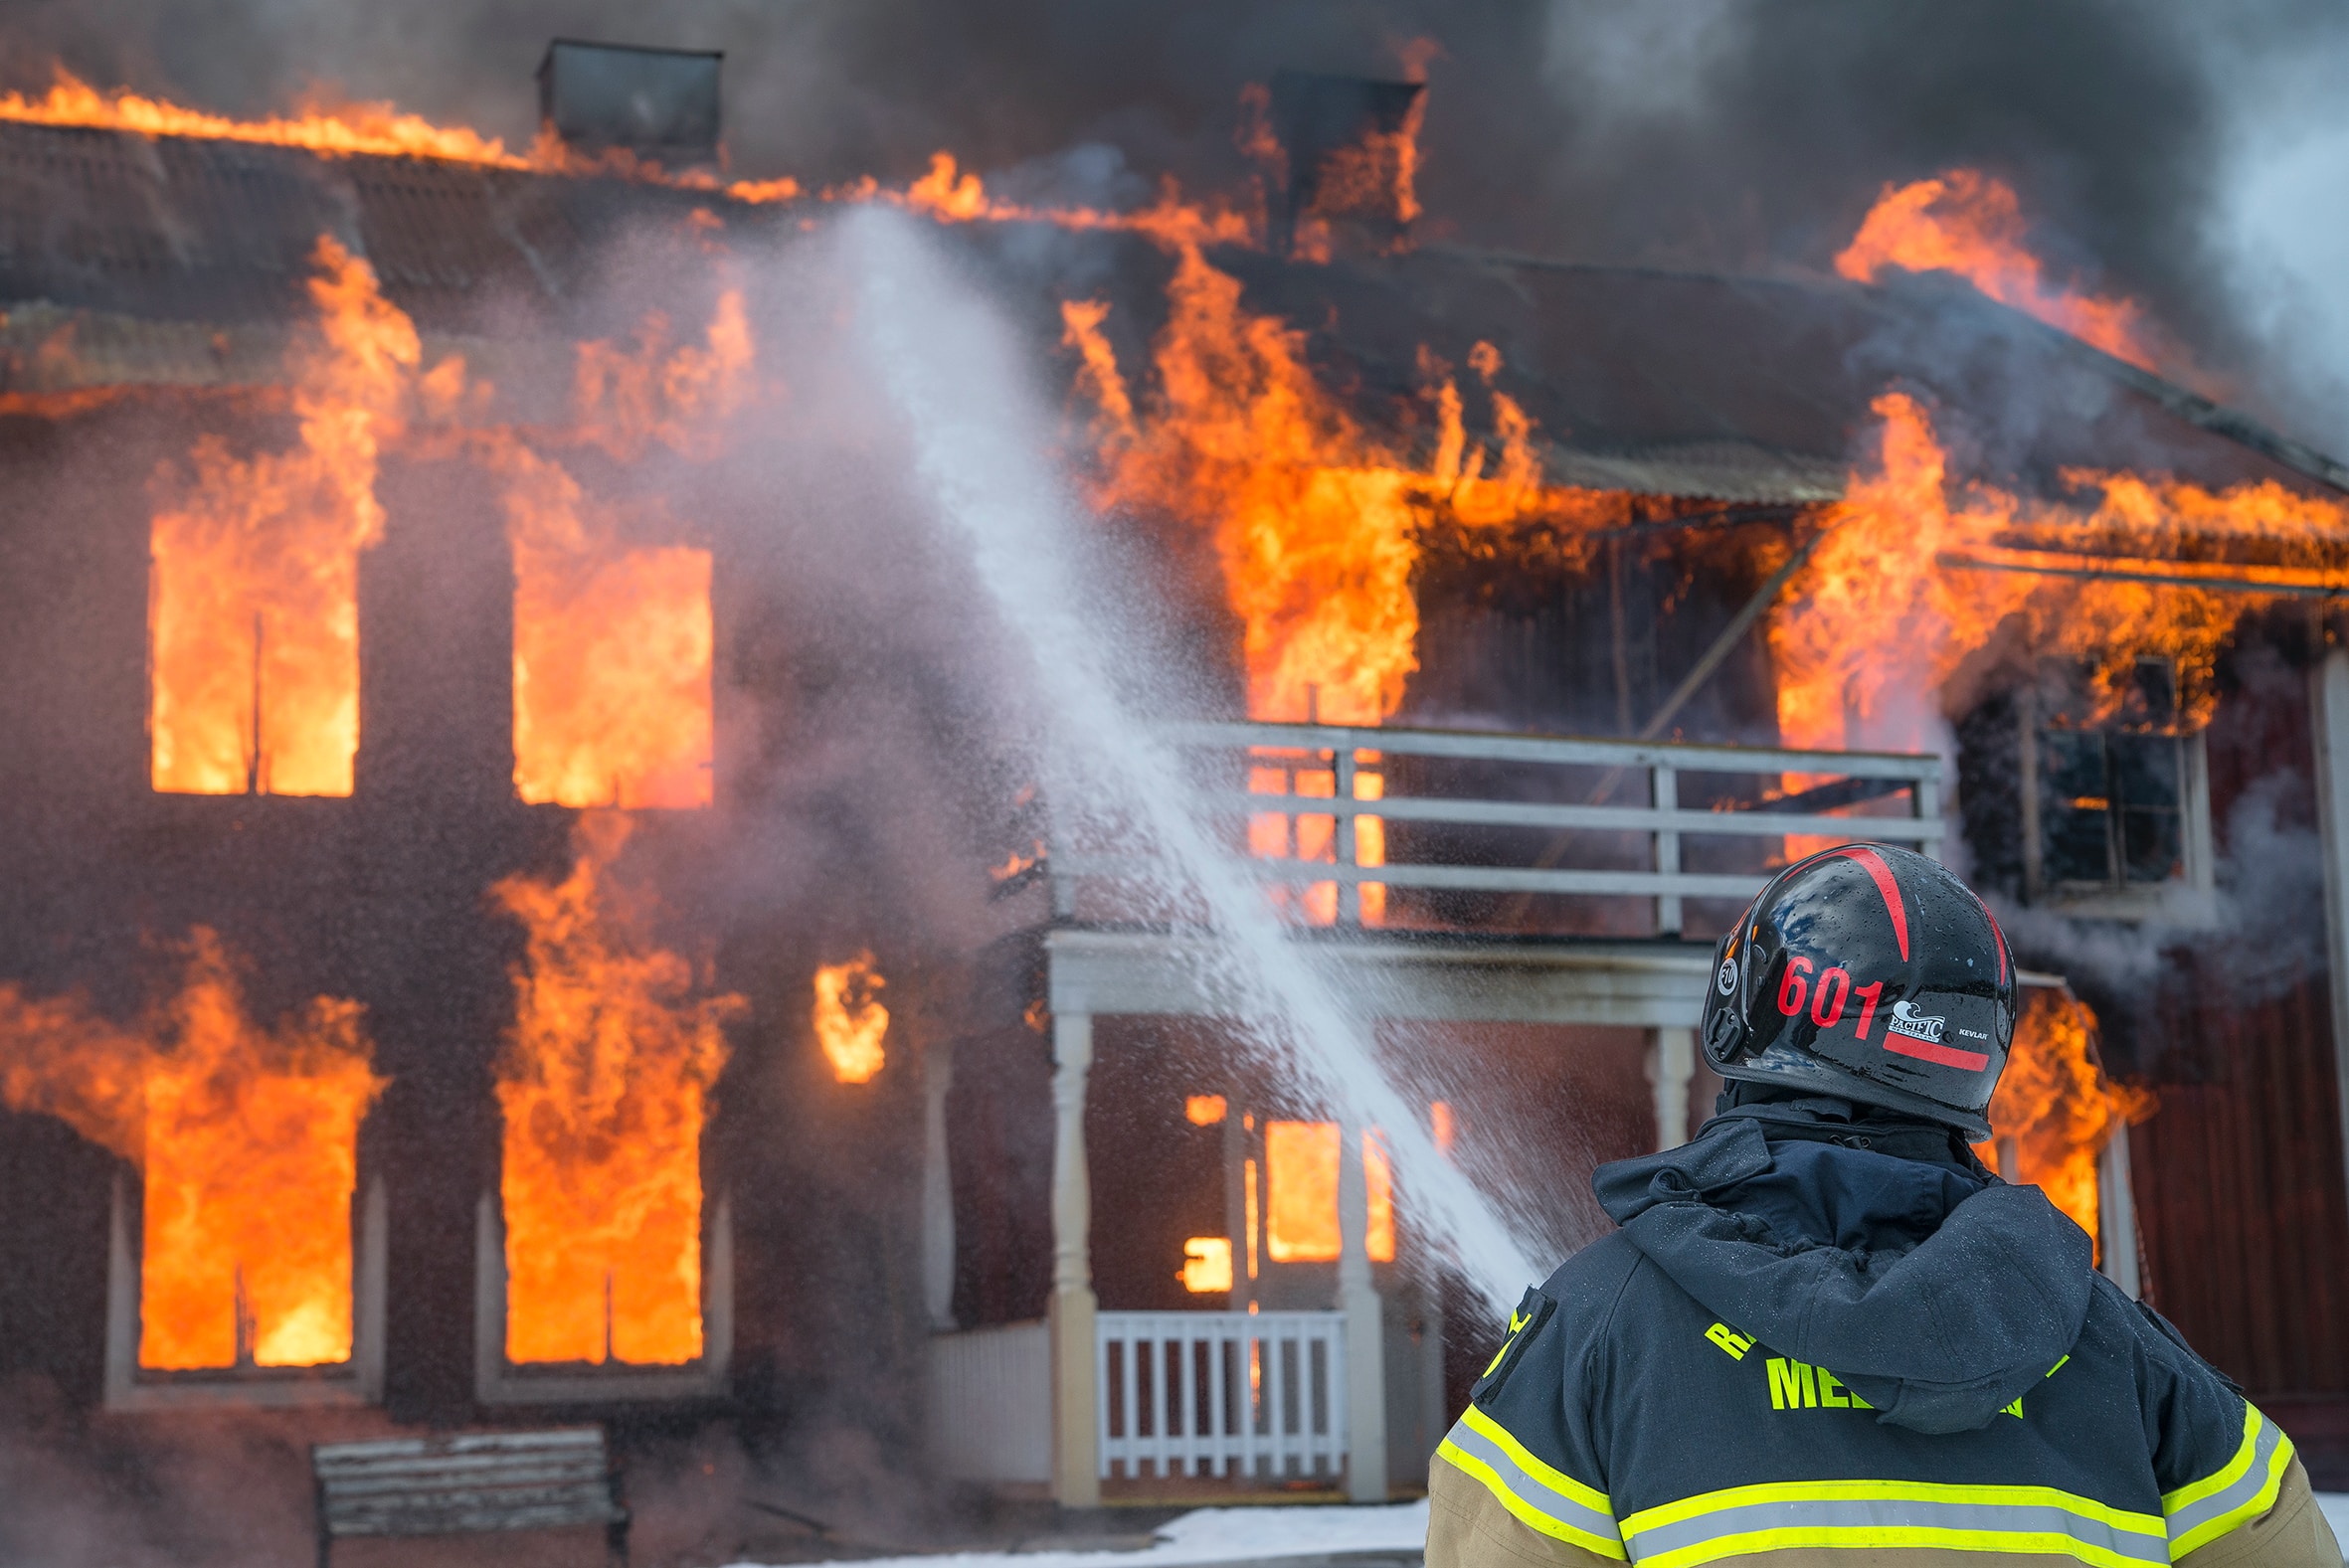  
Най малко 9 души загинаха при пожар във ваканционна къща